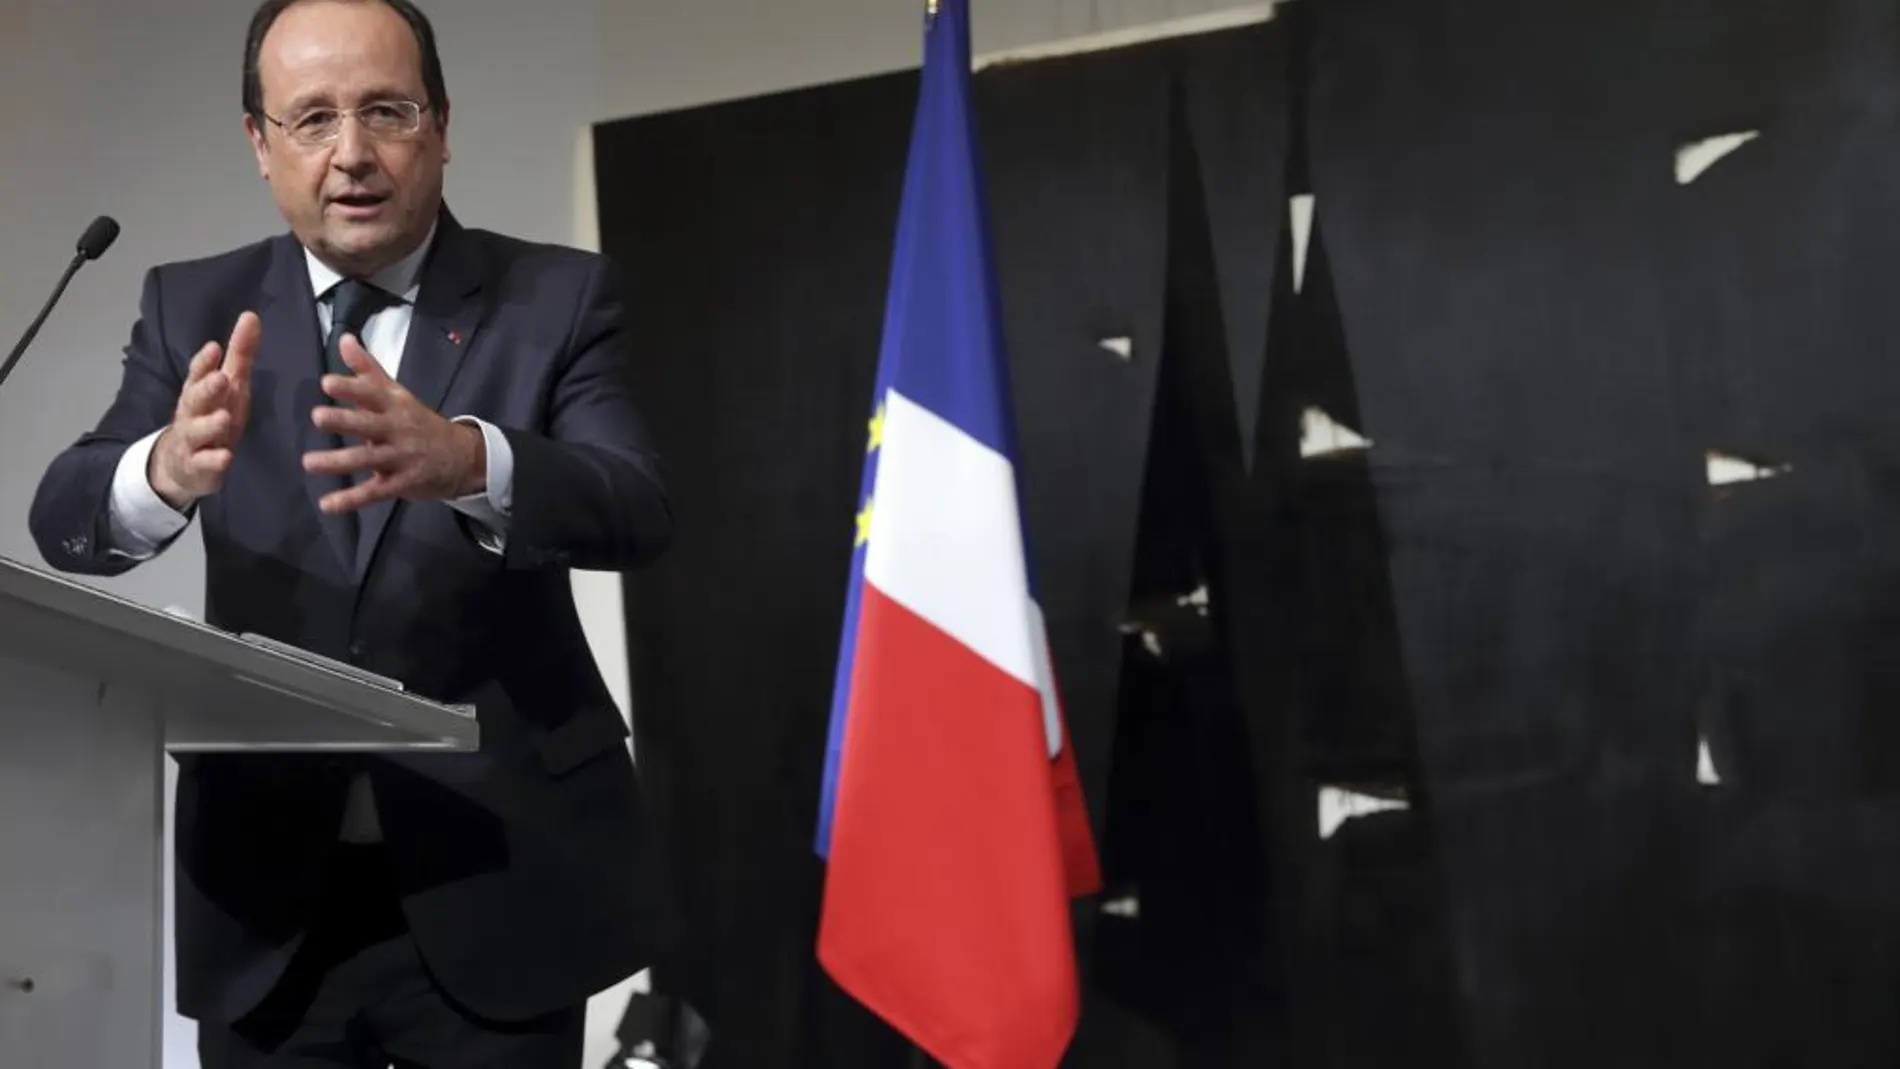 Hollande califica al Rey Juan Carlos I como «artesano de la transición»